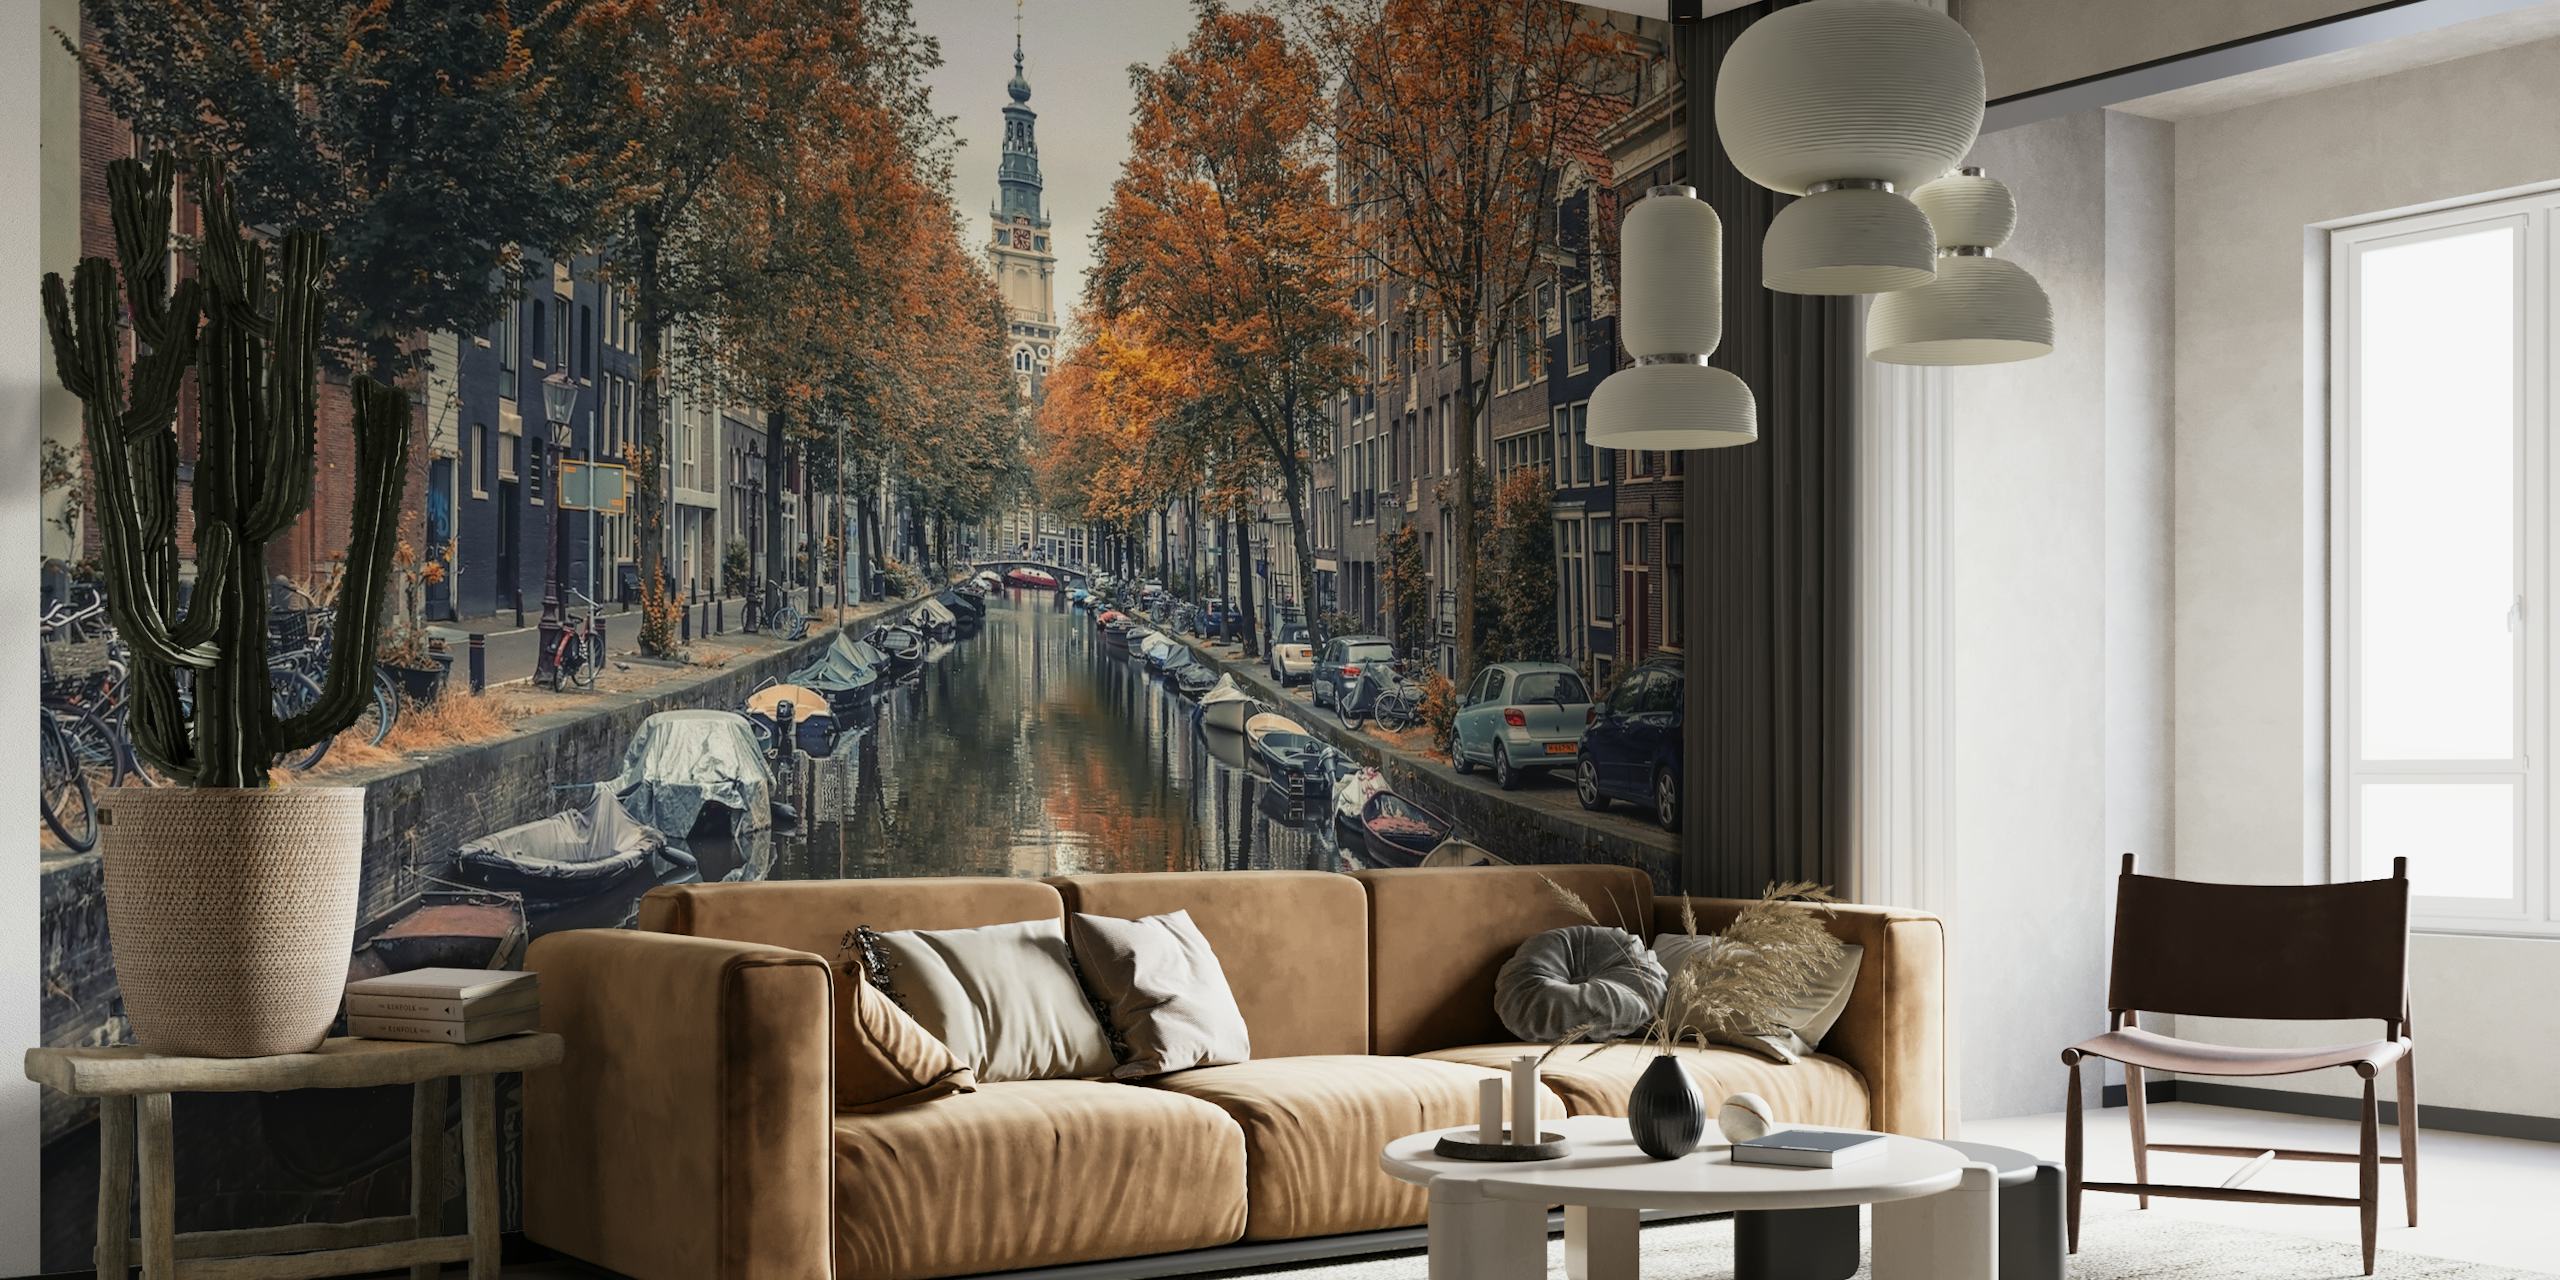 Grachten van Amsterdam in de herfst met oranje bladeren en historische gebouwen